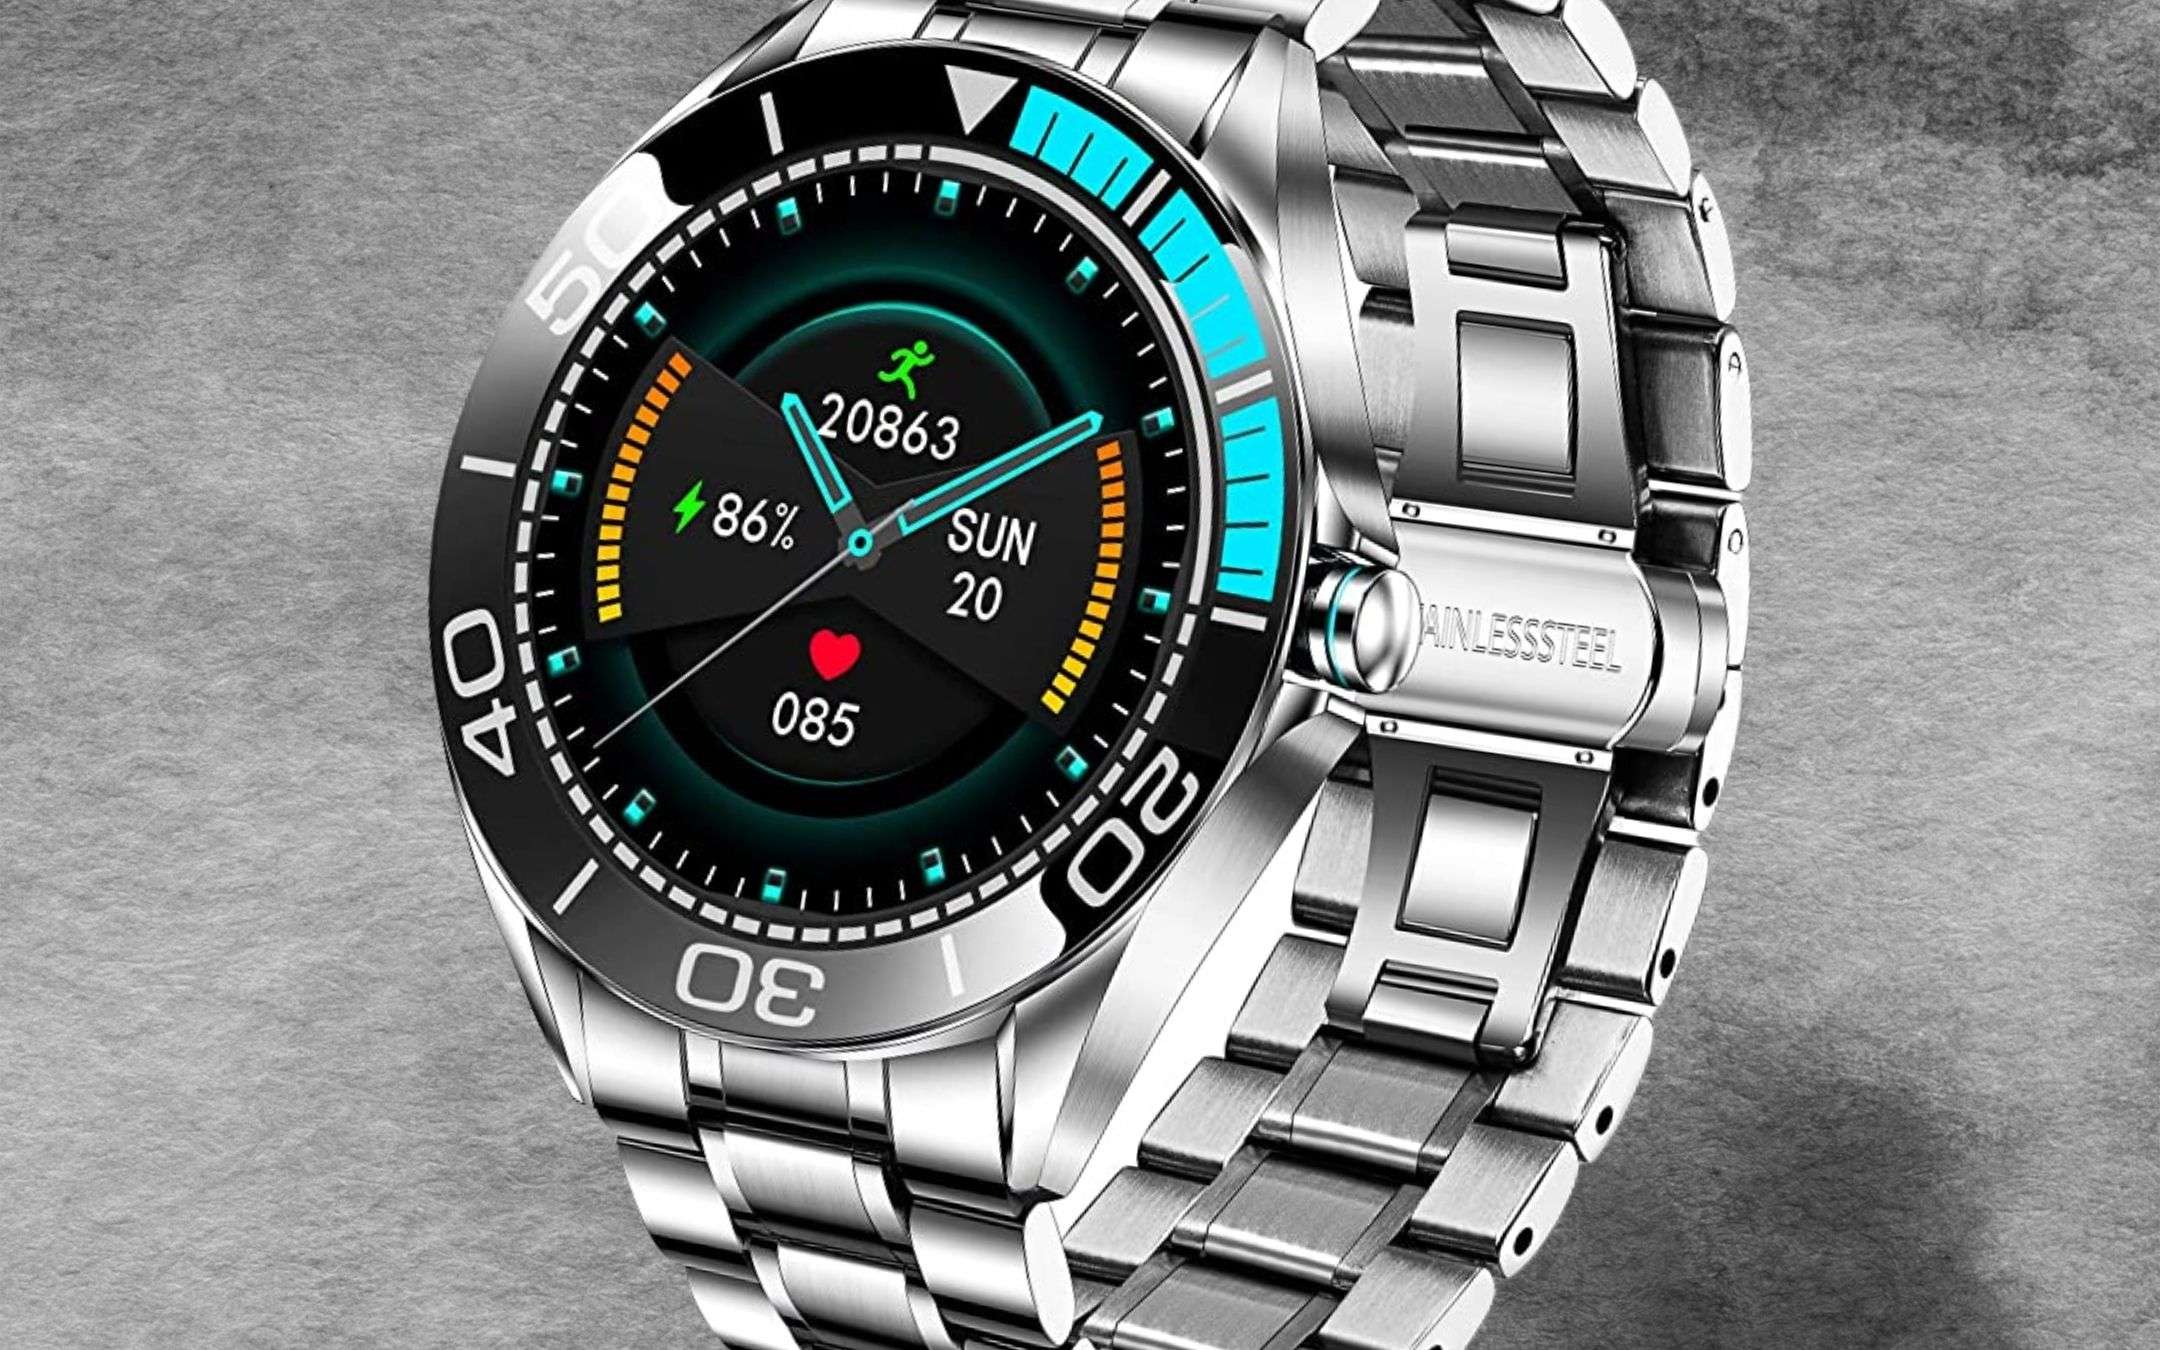 Smartwatch di lusso con saturimetro: prezzo shock (56€)